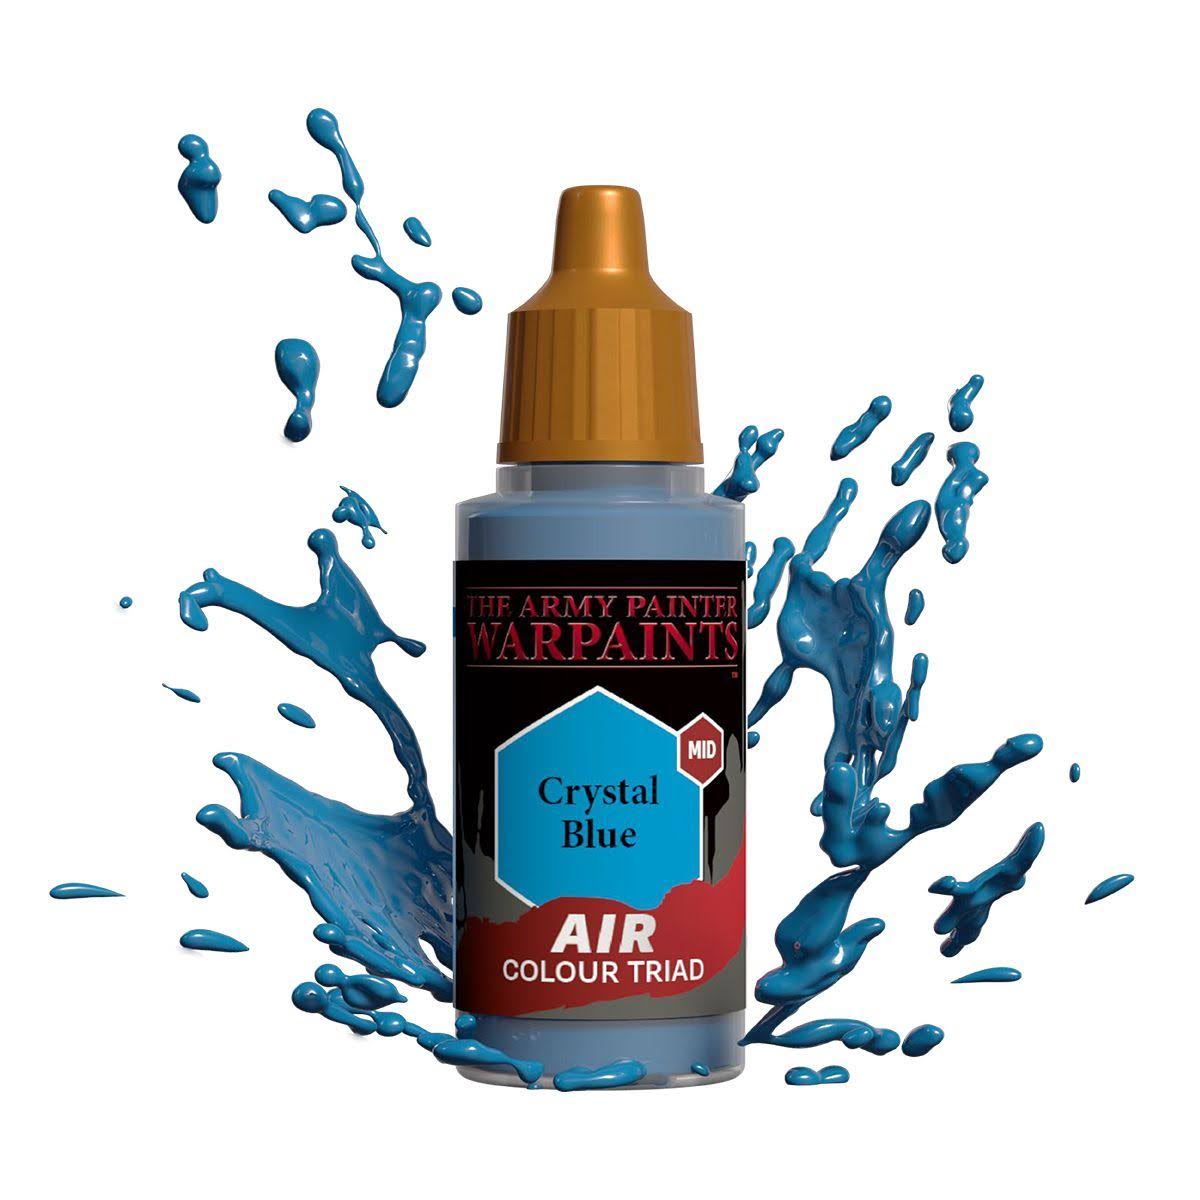 Warpaint Air - Crystal Blue